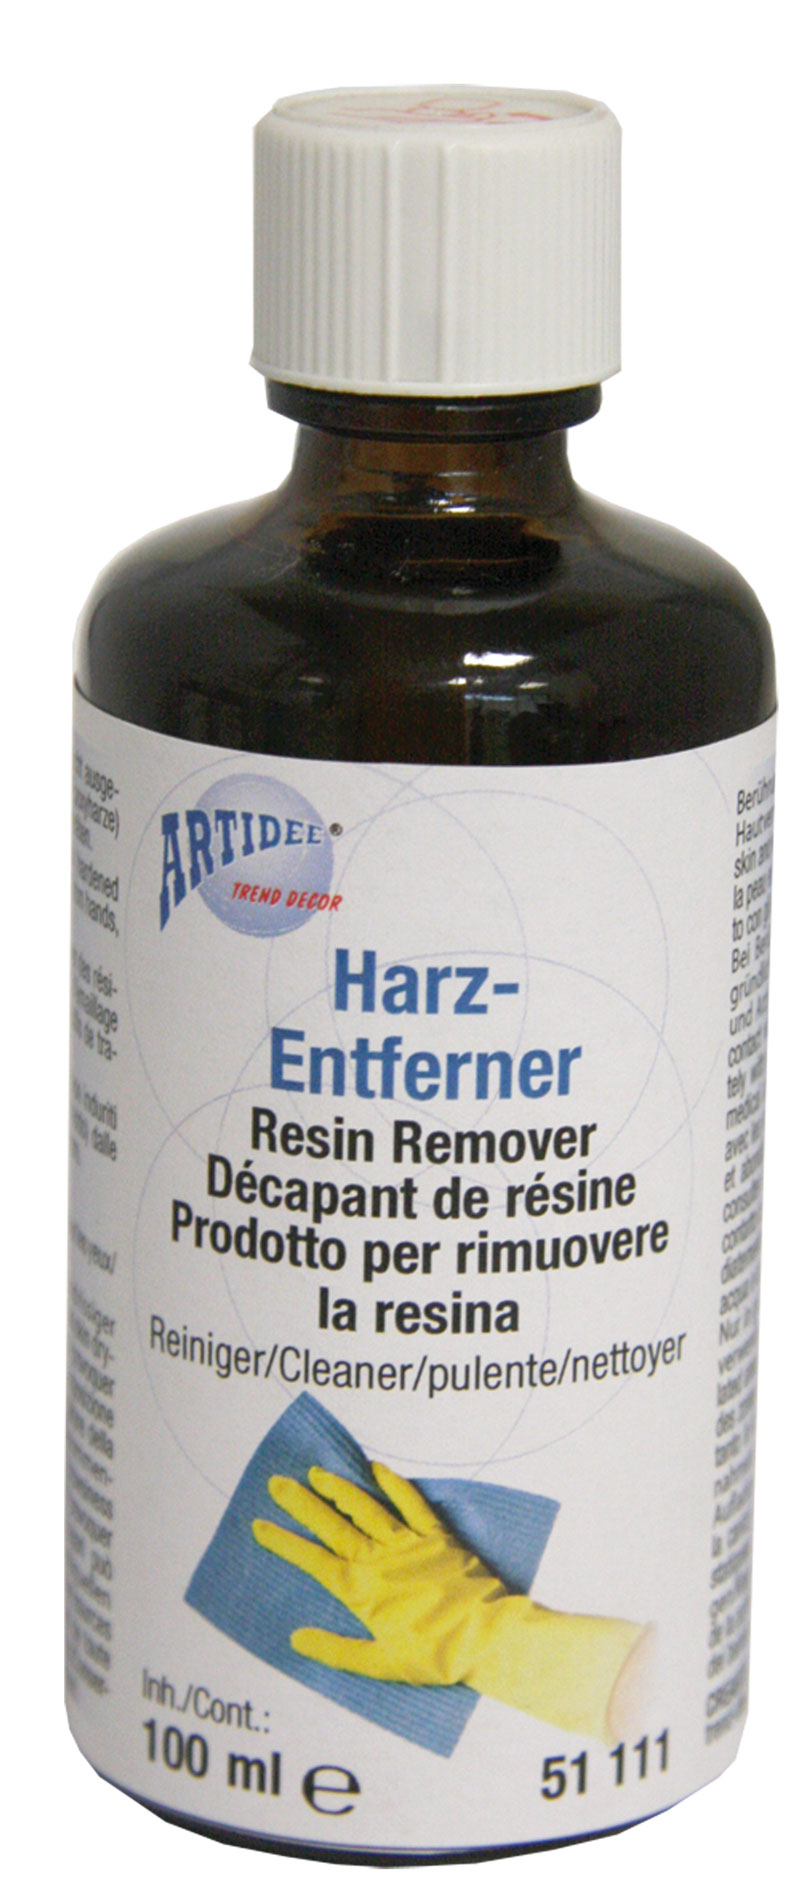 Harz-Entferner Resin Remover 100ml